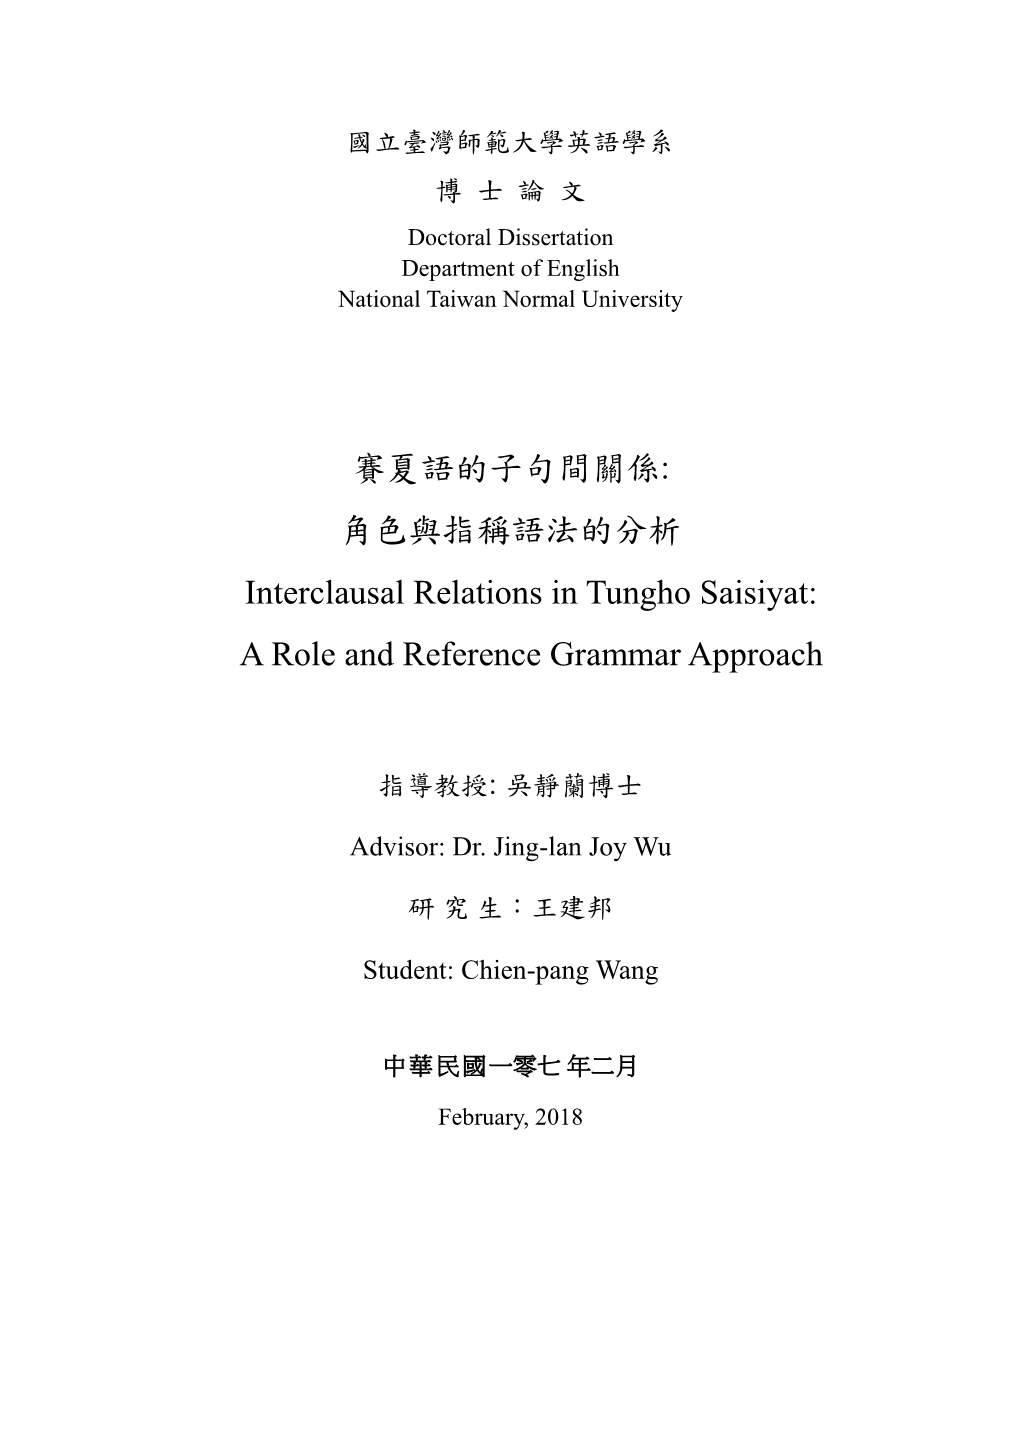 角色與指稱語法的分析 Interclausal Relations in Tungho Saisiyat: a Role and Reference Grammar Approach